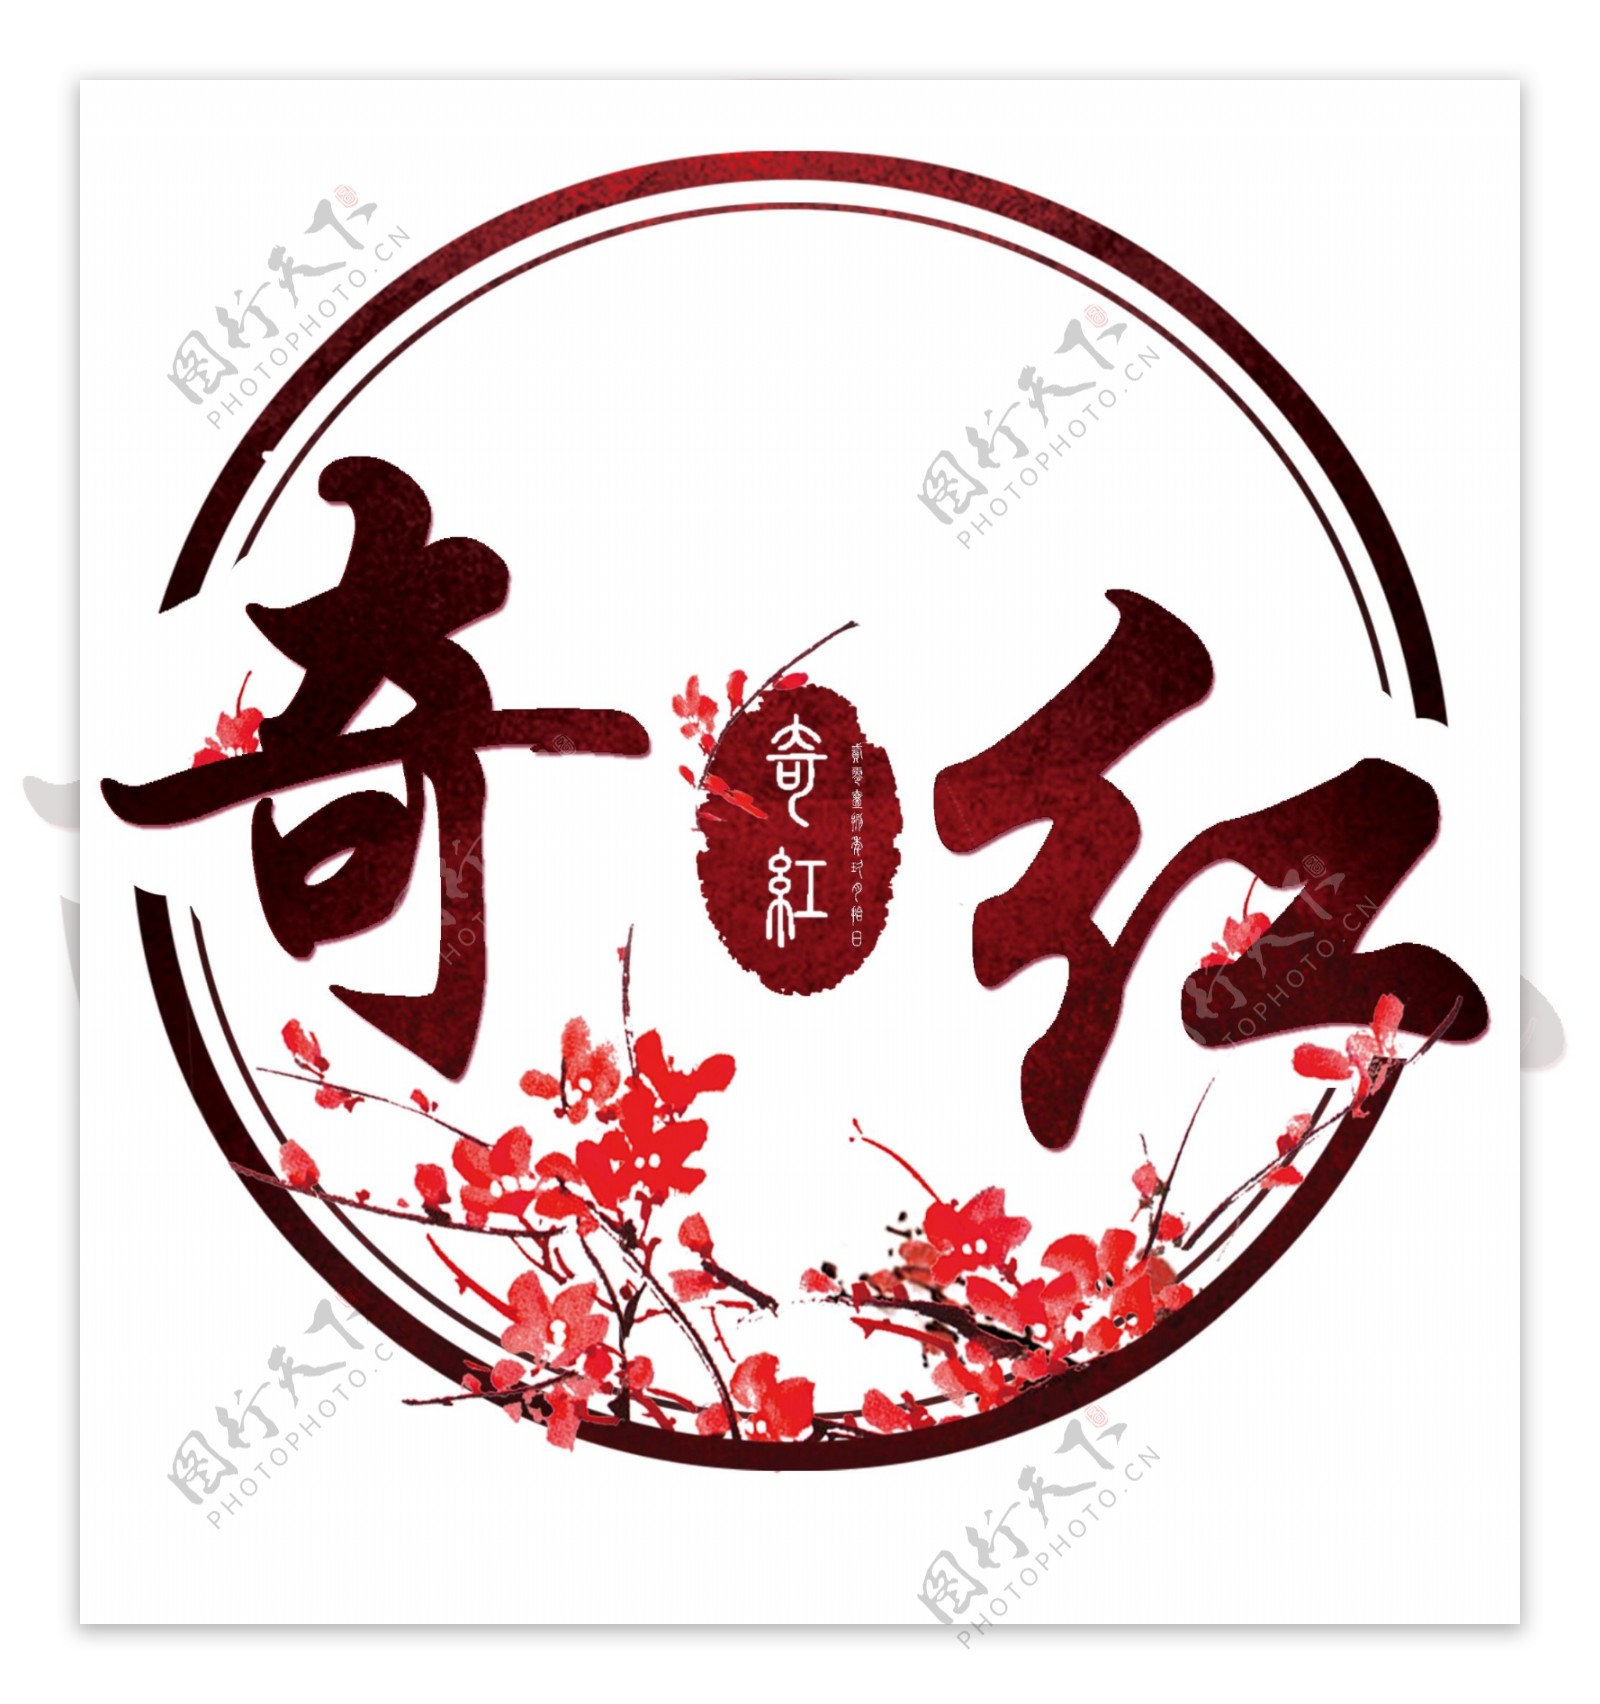 中国风logo设计